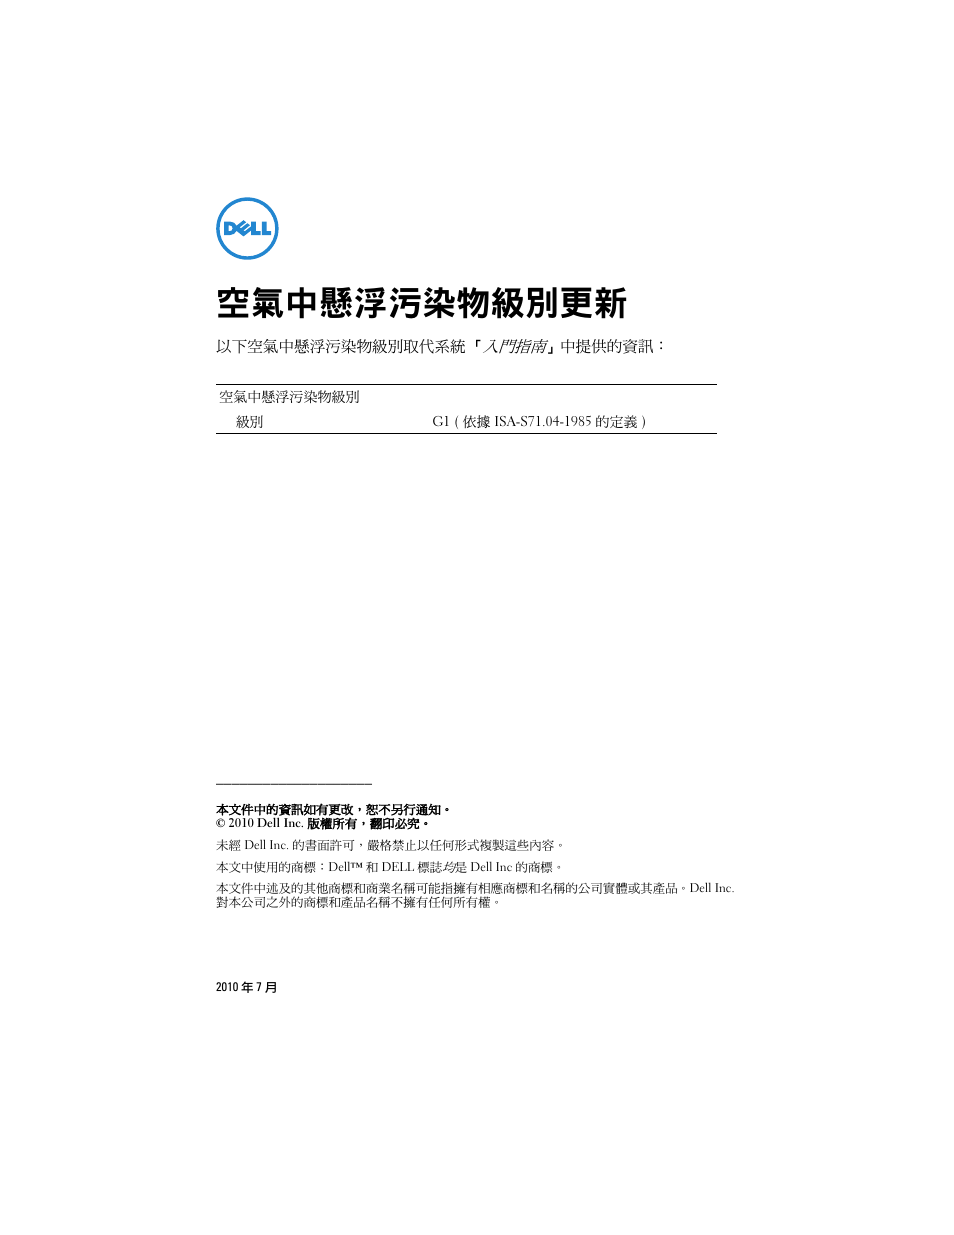 空氣中懸浮污染物級別更新 | Dell PowerEdge T710 User Manual | Page 5 / 32